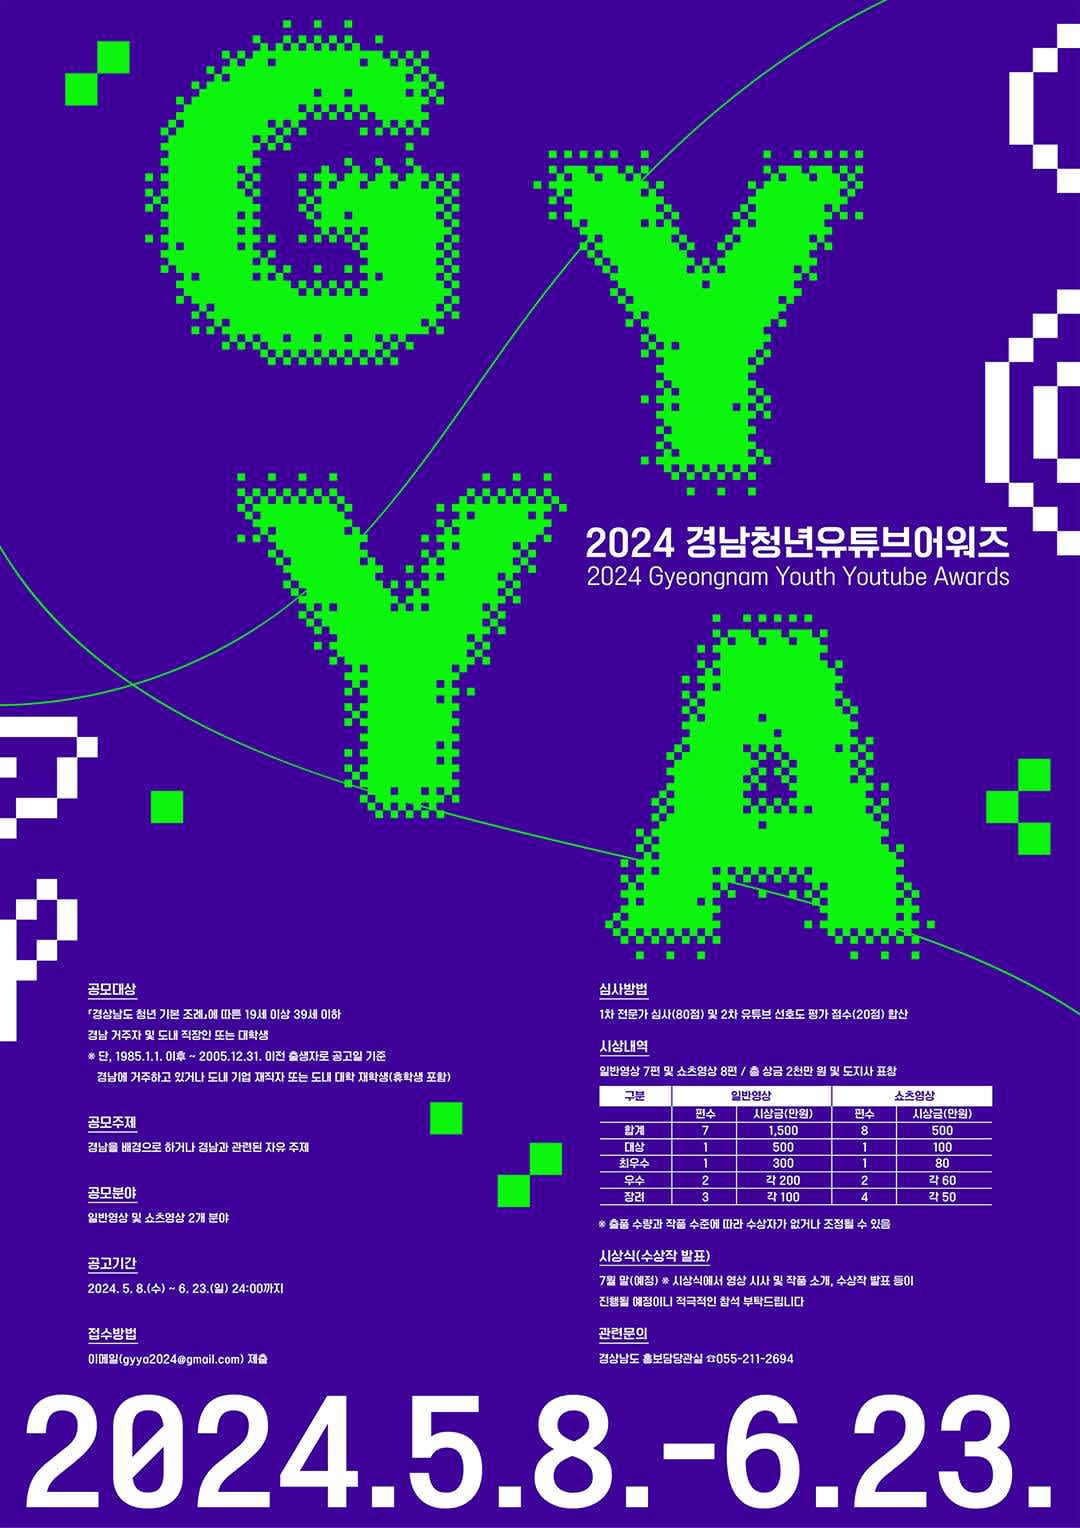 2024 경남청년유튜브어워즈(Gyeongnam Youth Youtube Awards)